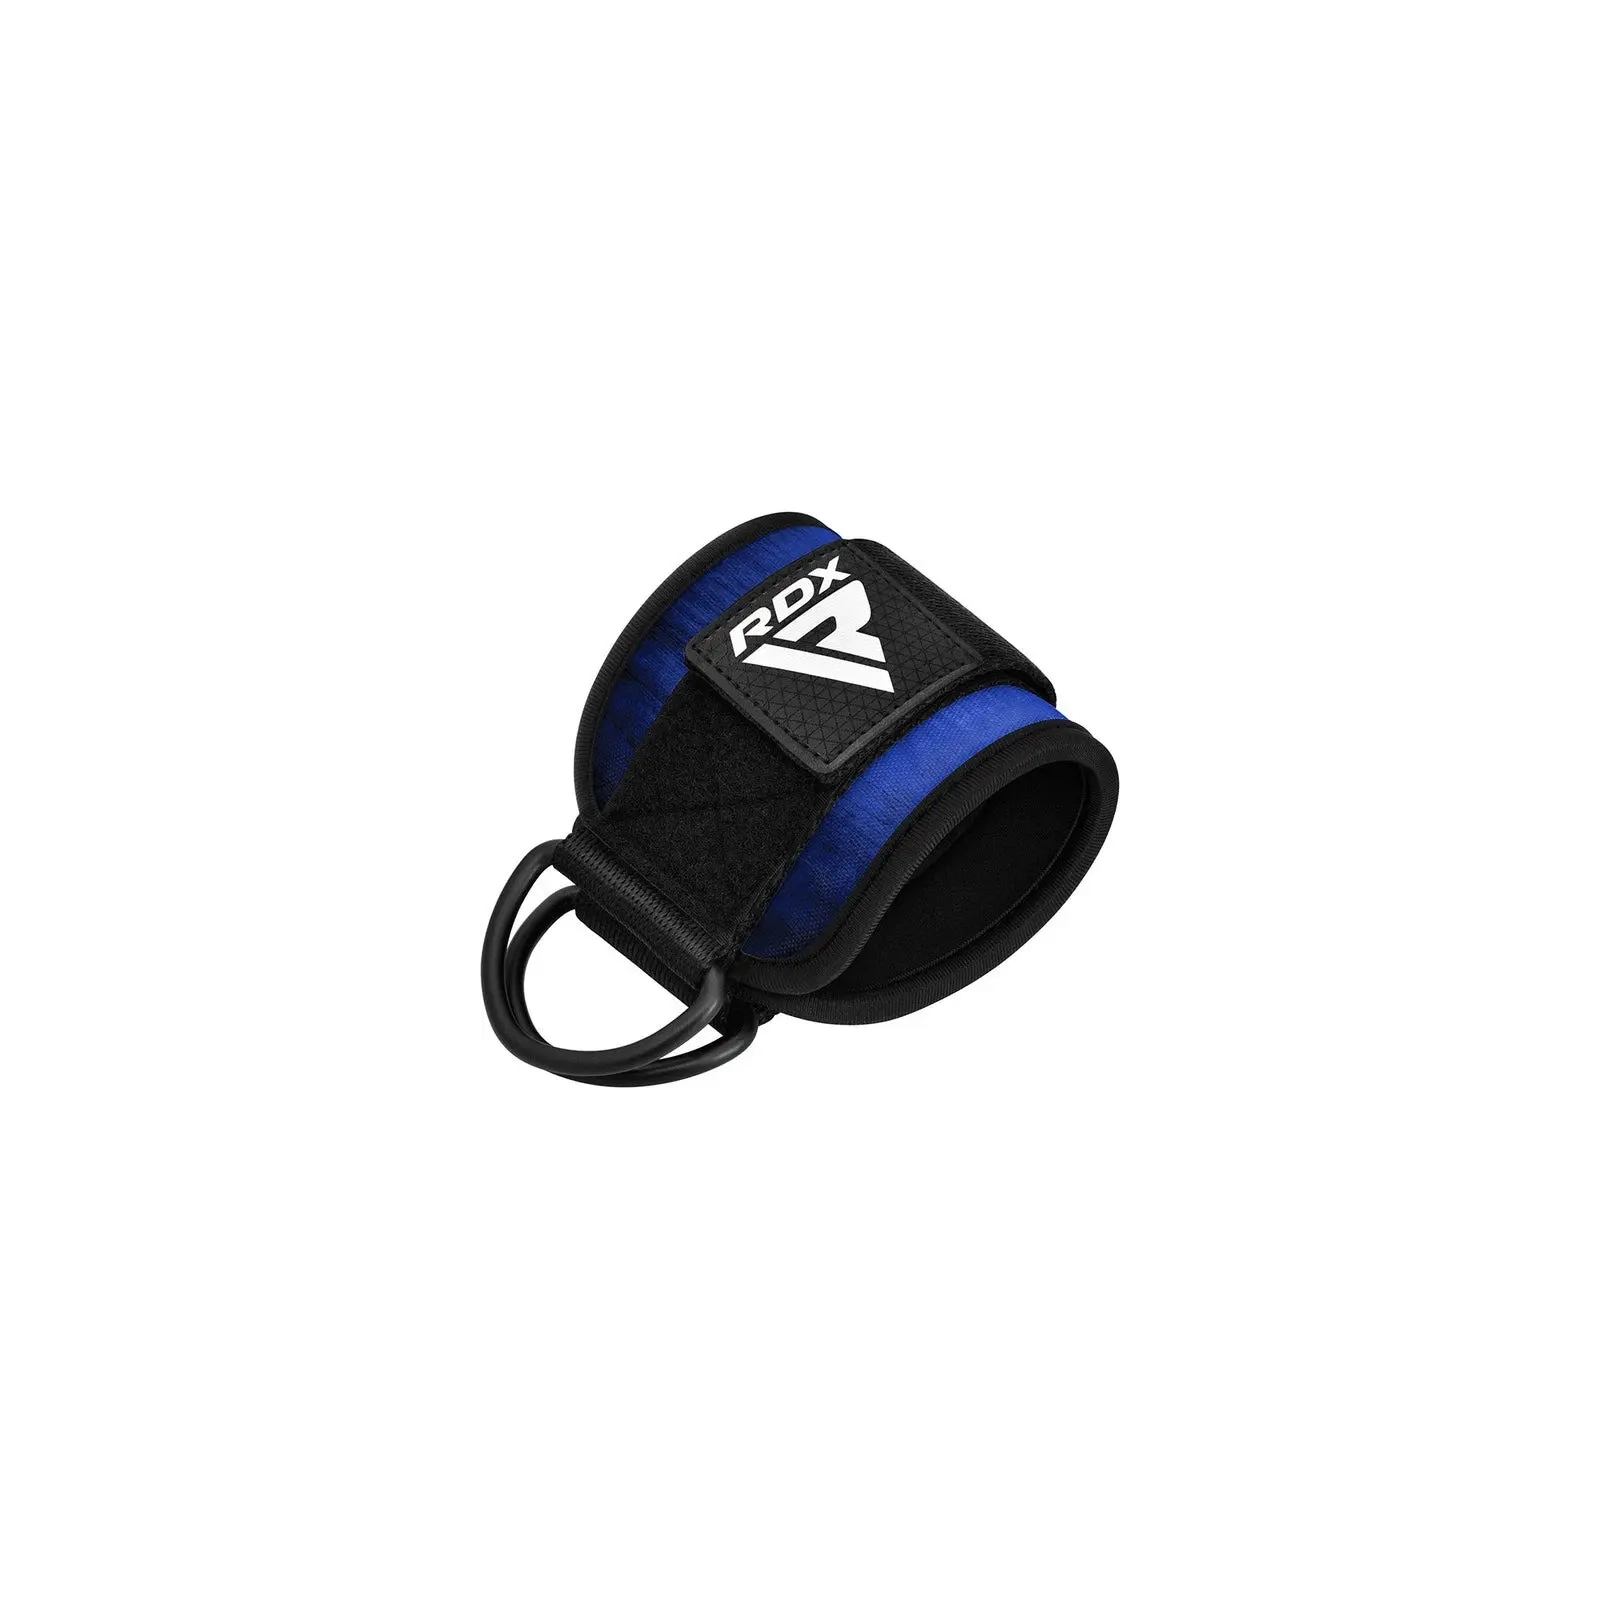 Манжета для тяги RDX A4 Gym Ankle Pro Blue Pair (WAN-A4U-P) изображение 3